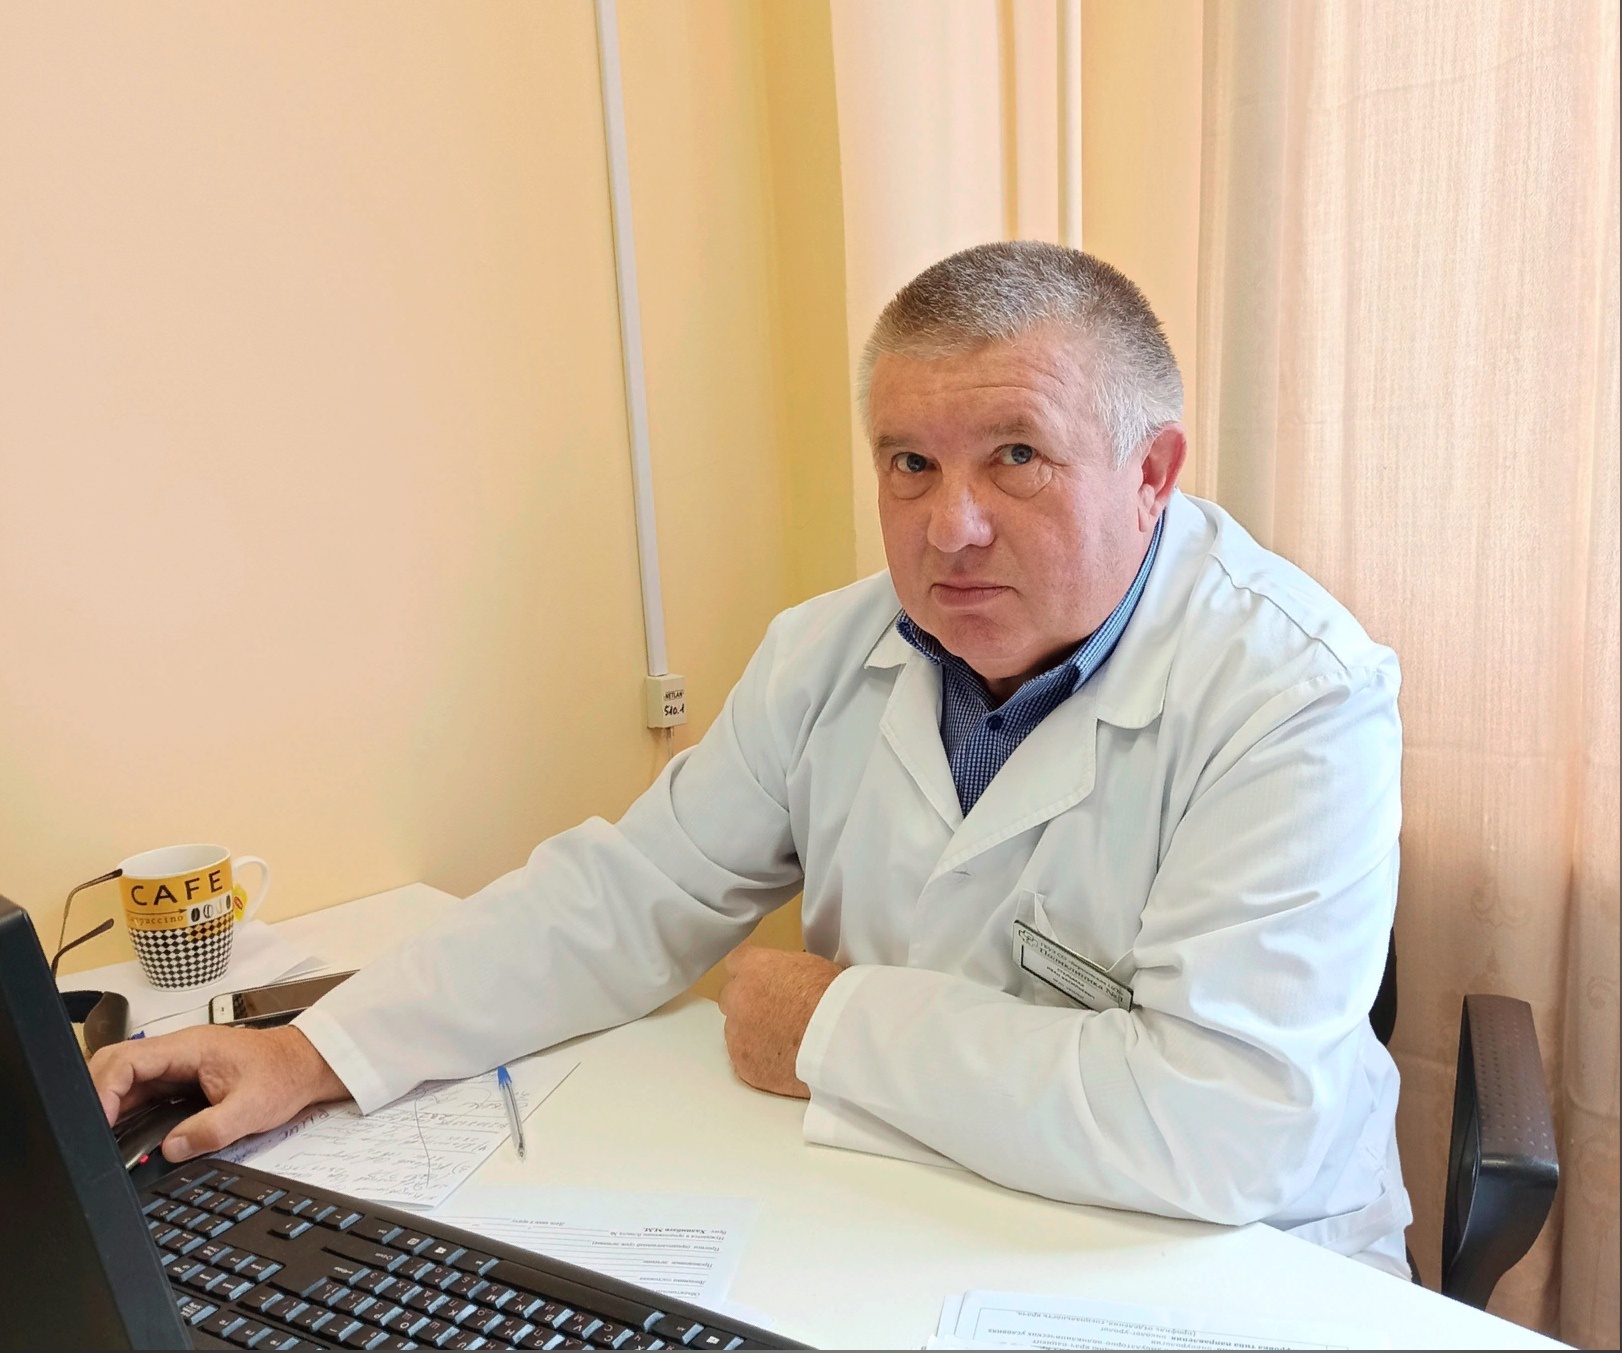 В Березовском начал прием профильных пациентов уролог